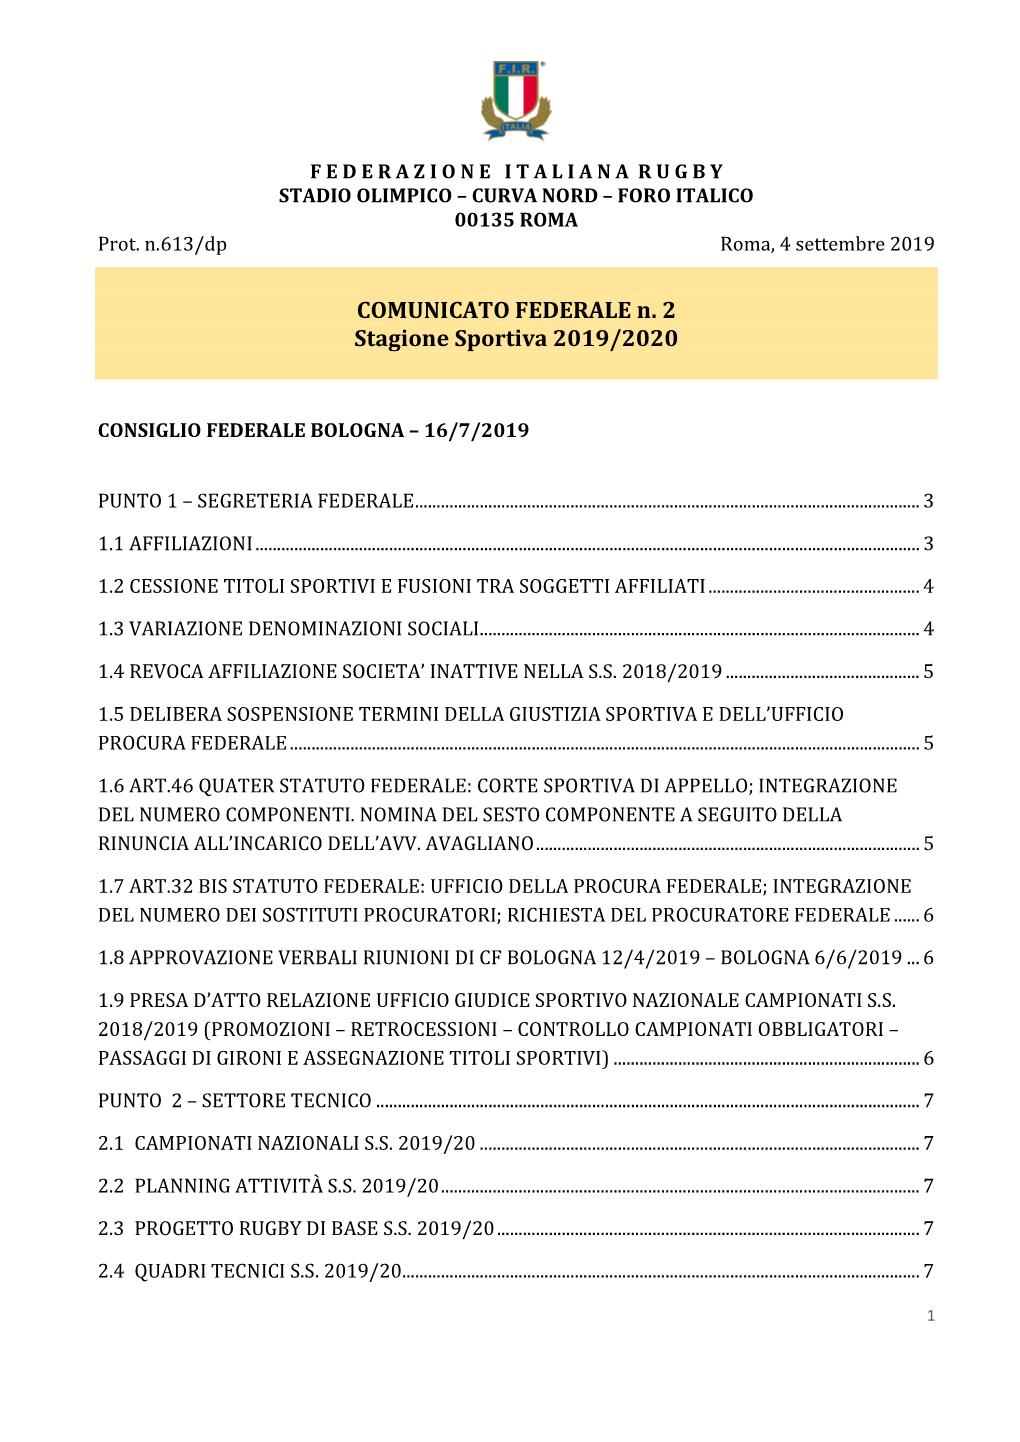 COMUNICATO FEDERALE N. 2 Stagione Sportiva 2019/2020